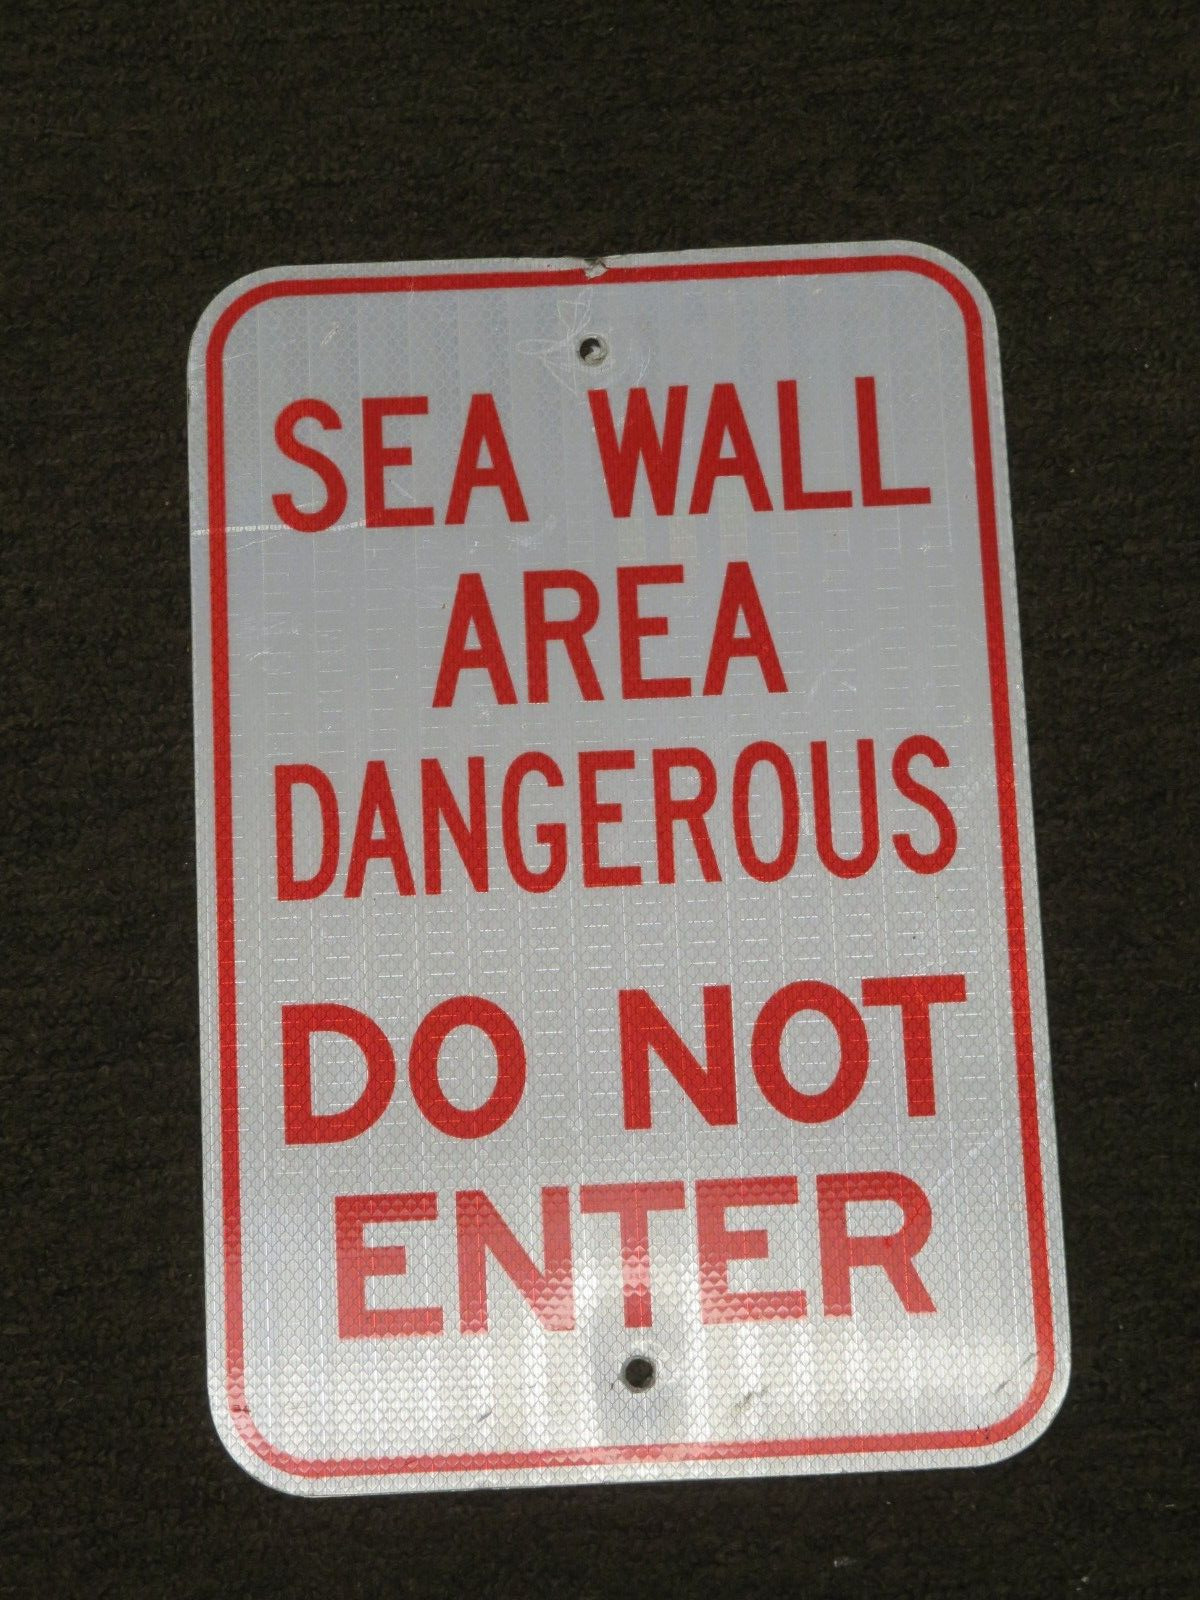 SEAWALL AREA DANGEROUS DO NOT ENTER RETIRED SIGN